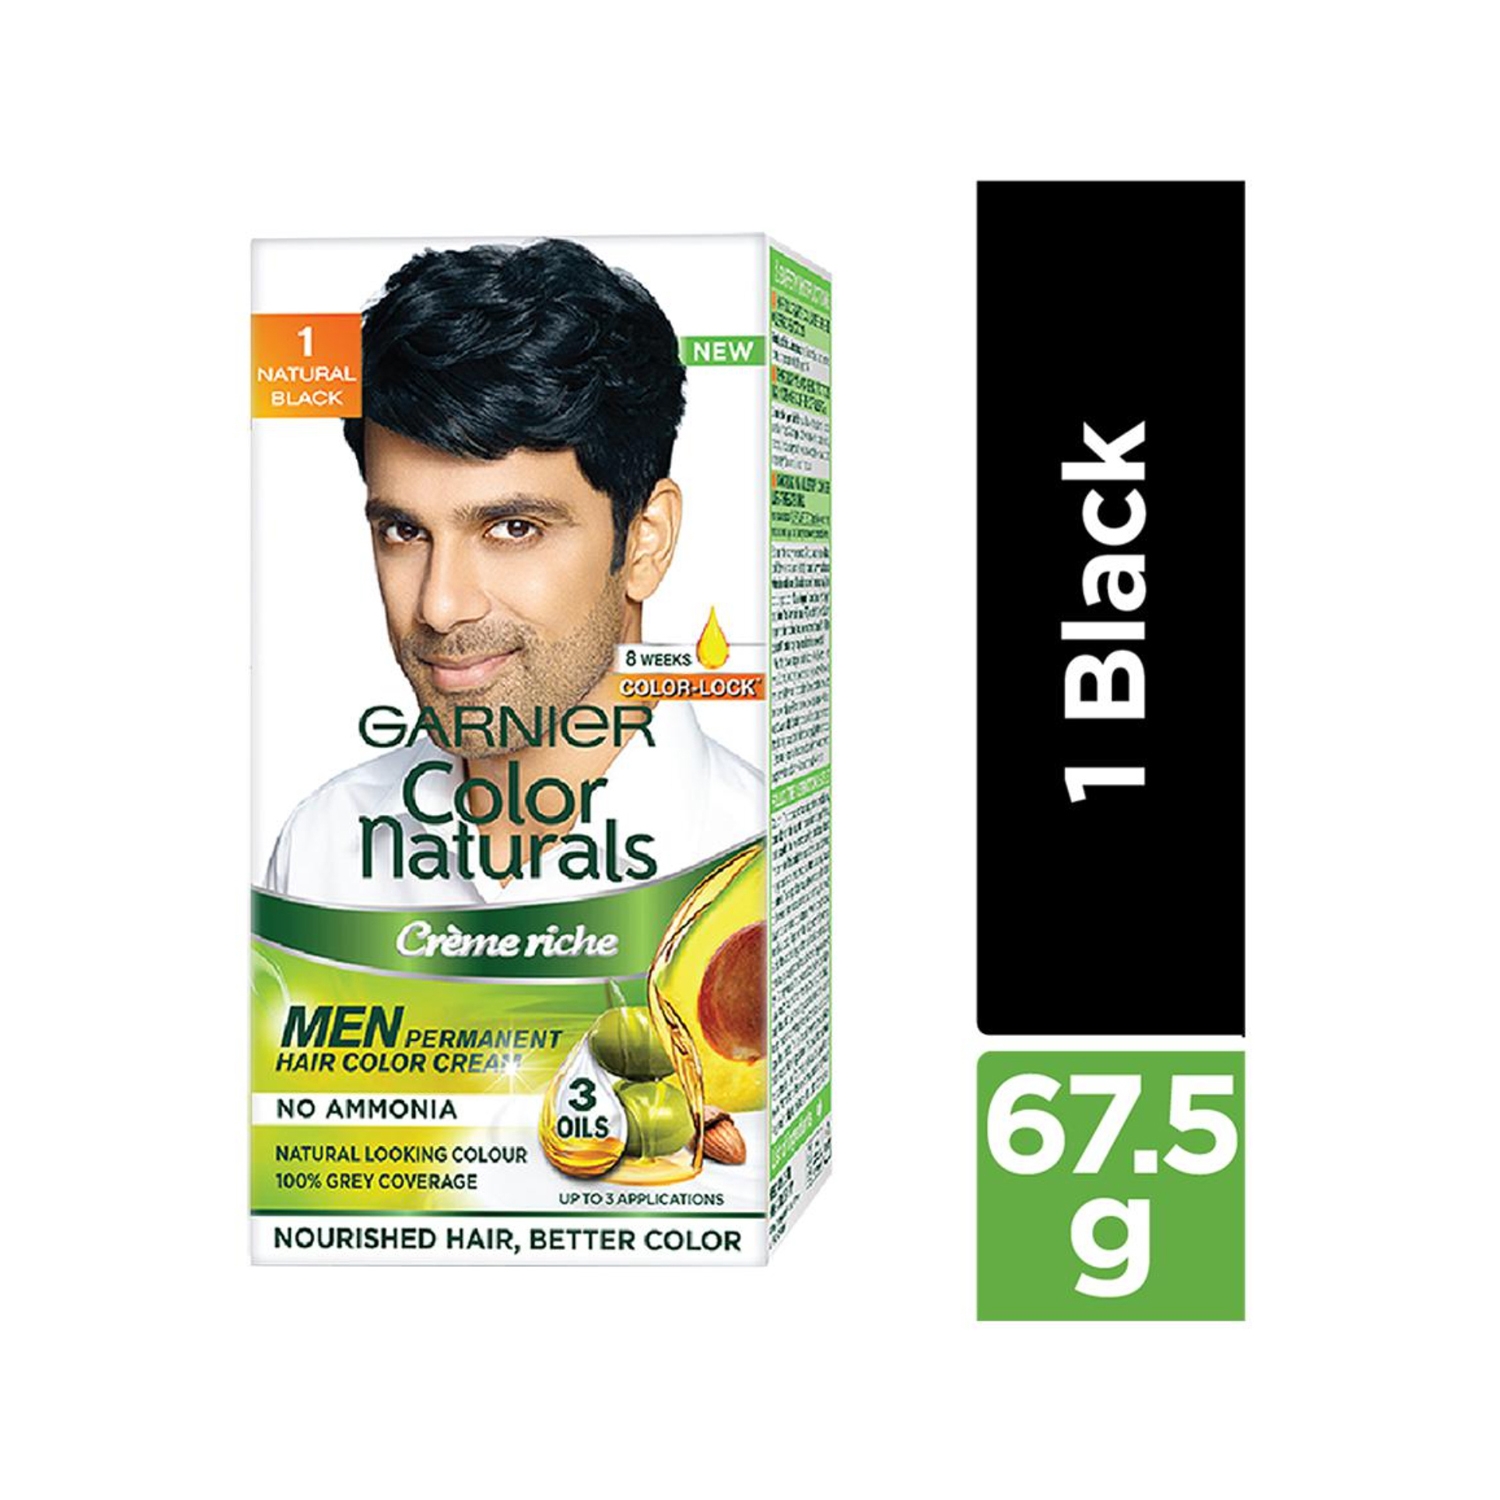 Garnier Color Naturals Creme Riche for Men - 1 Natural Black (60g)